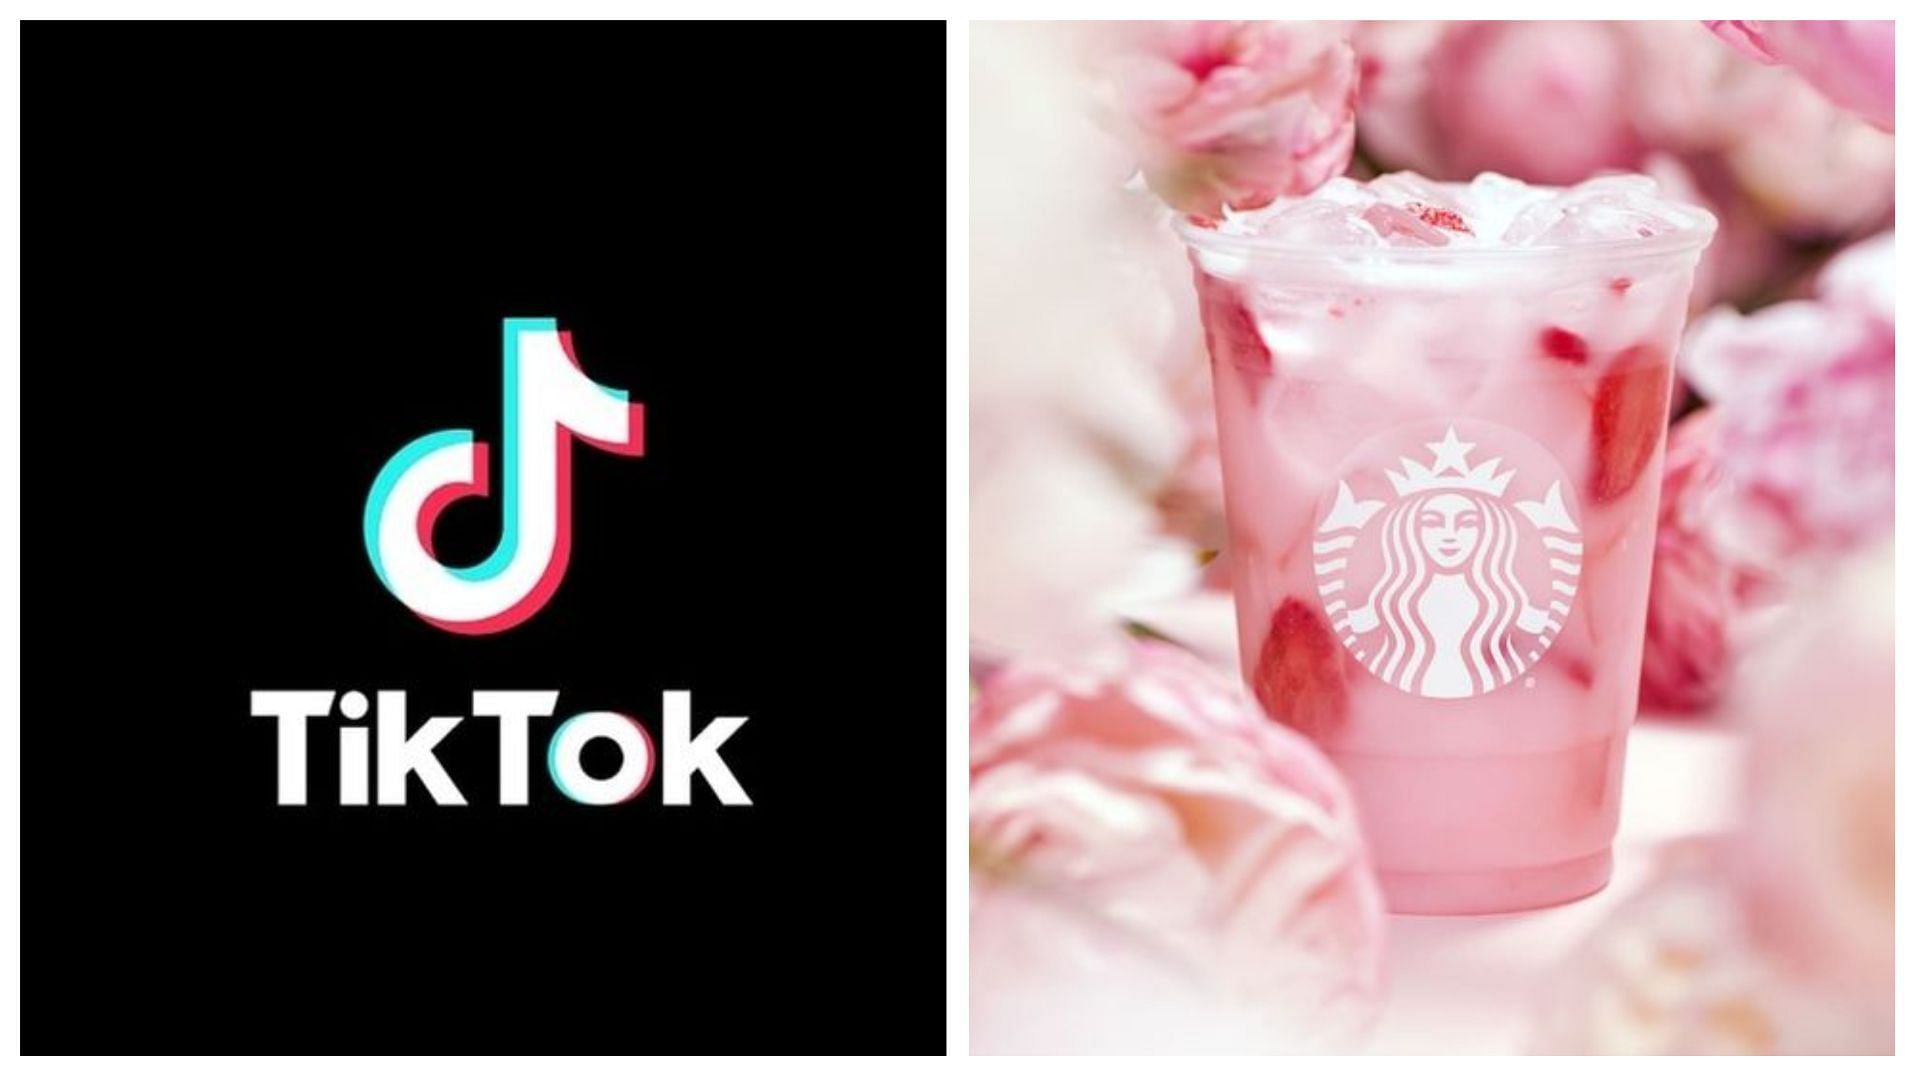 Top 10 TikTok Starbucks drinks you need to try (Image via @TikTok)